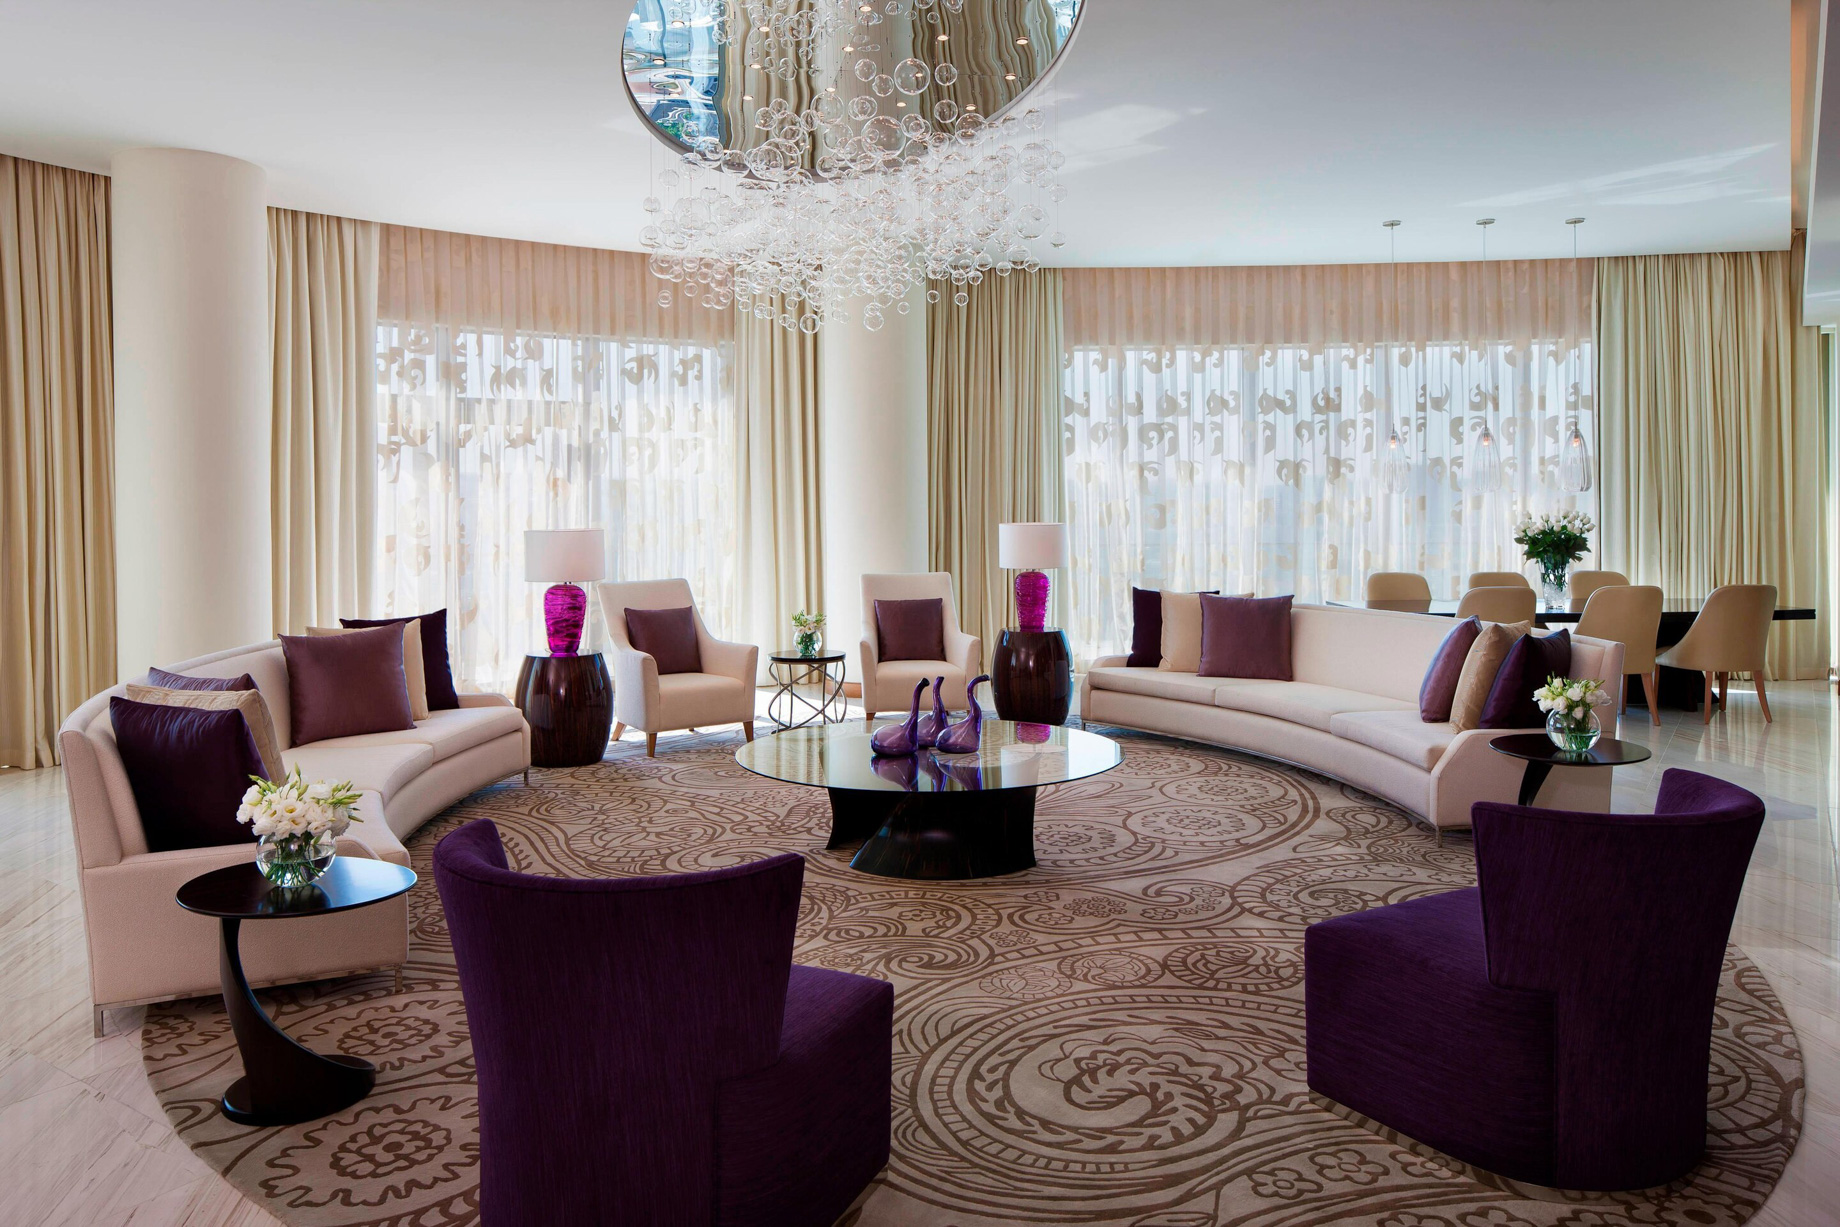 JW Marriott Absheron Baku Hotel – Baku, Azerbaijan – Presidential Suite Living Room